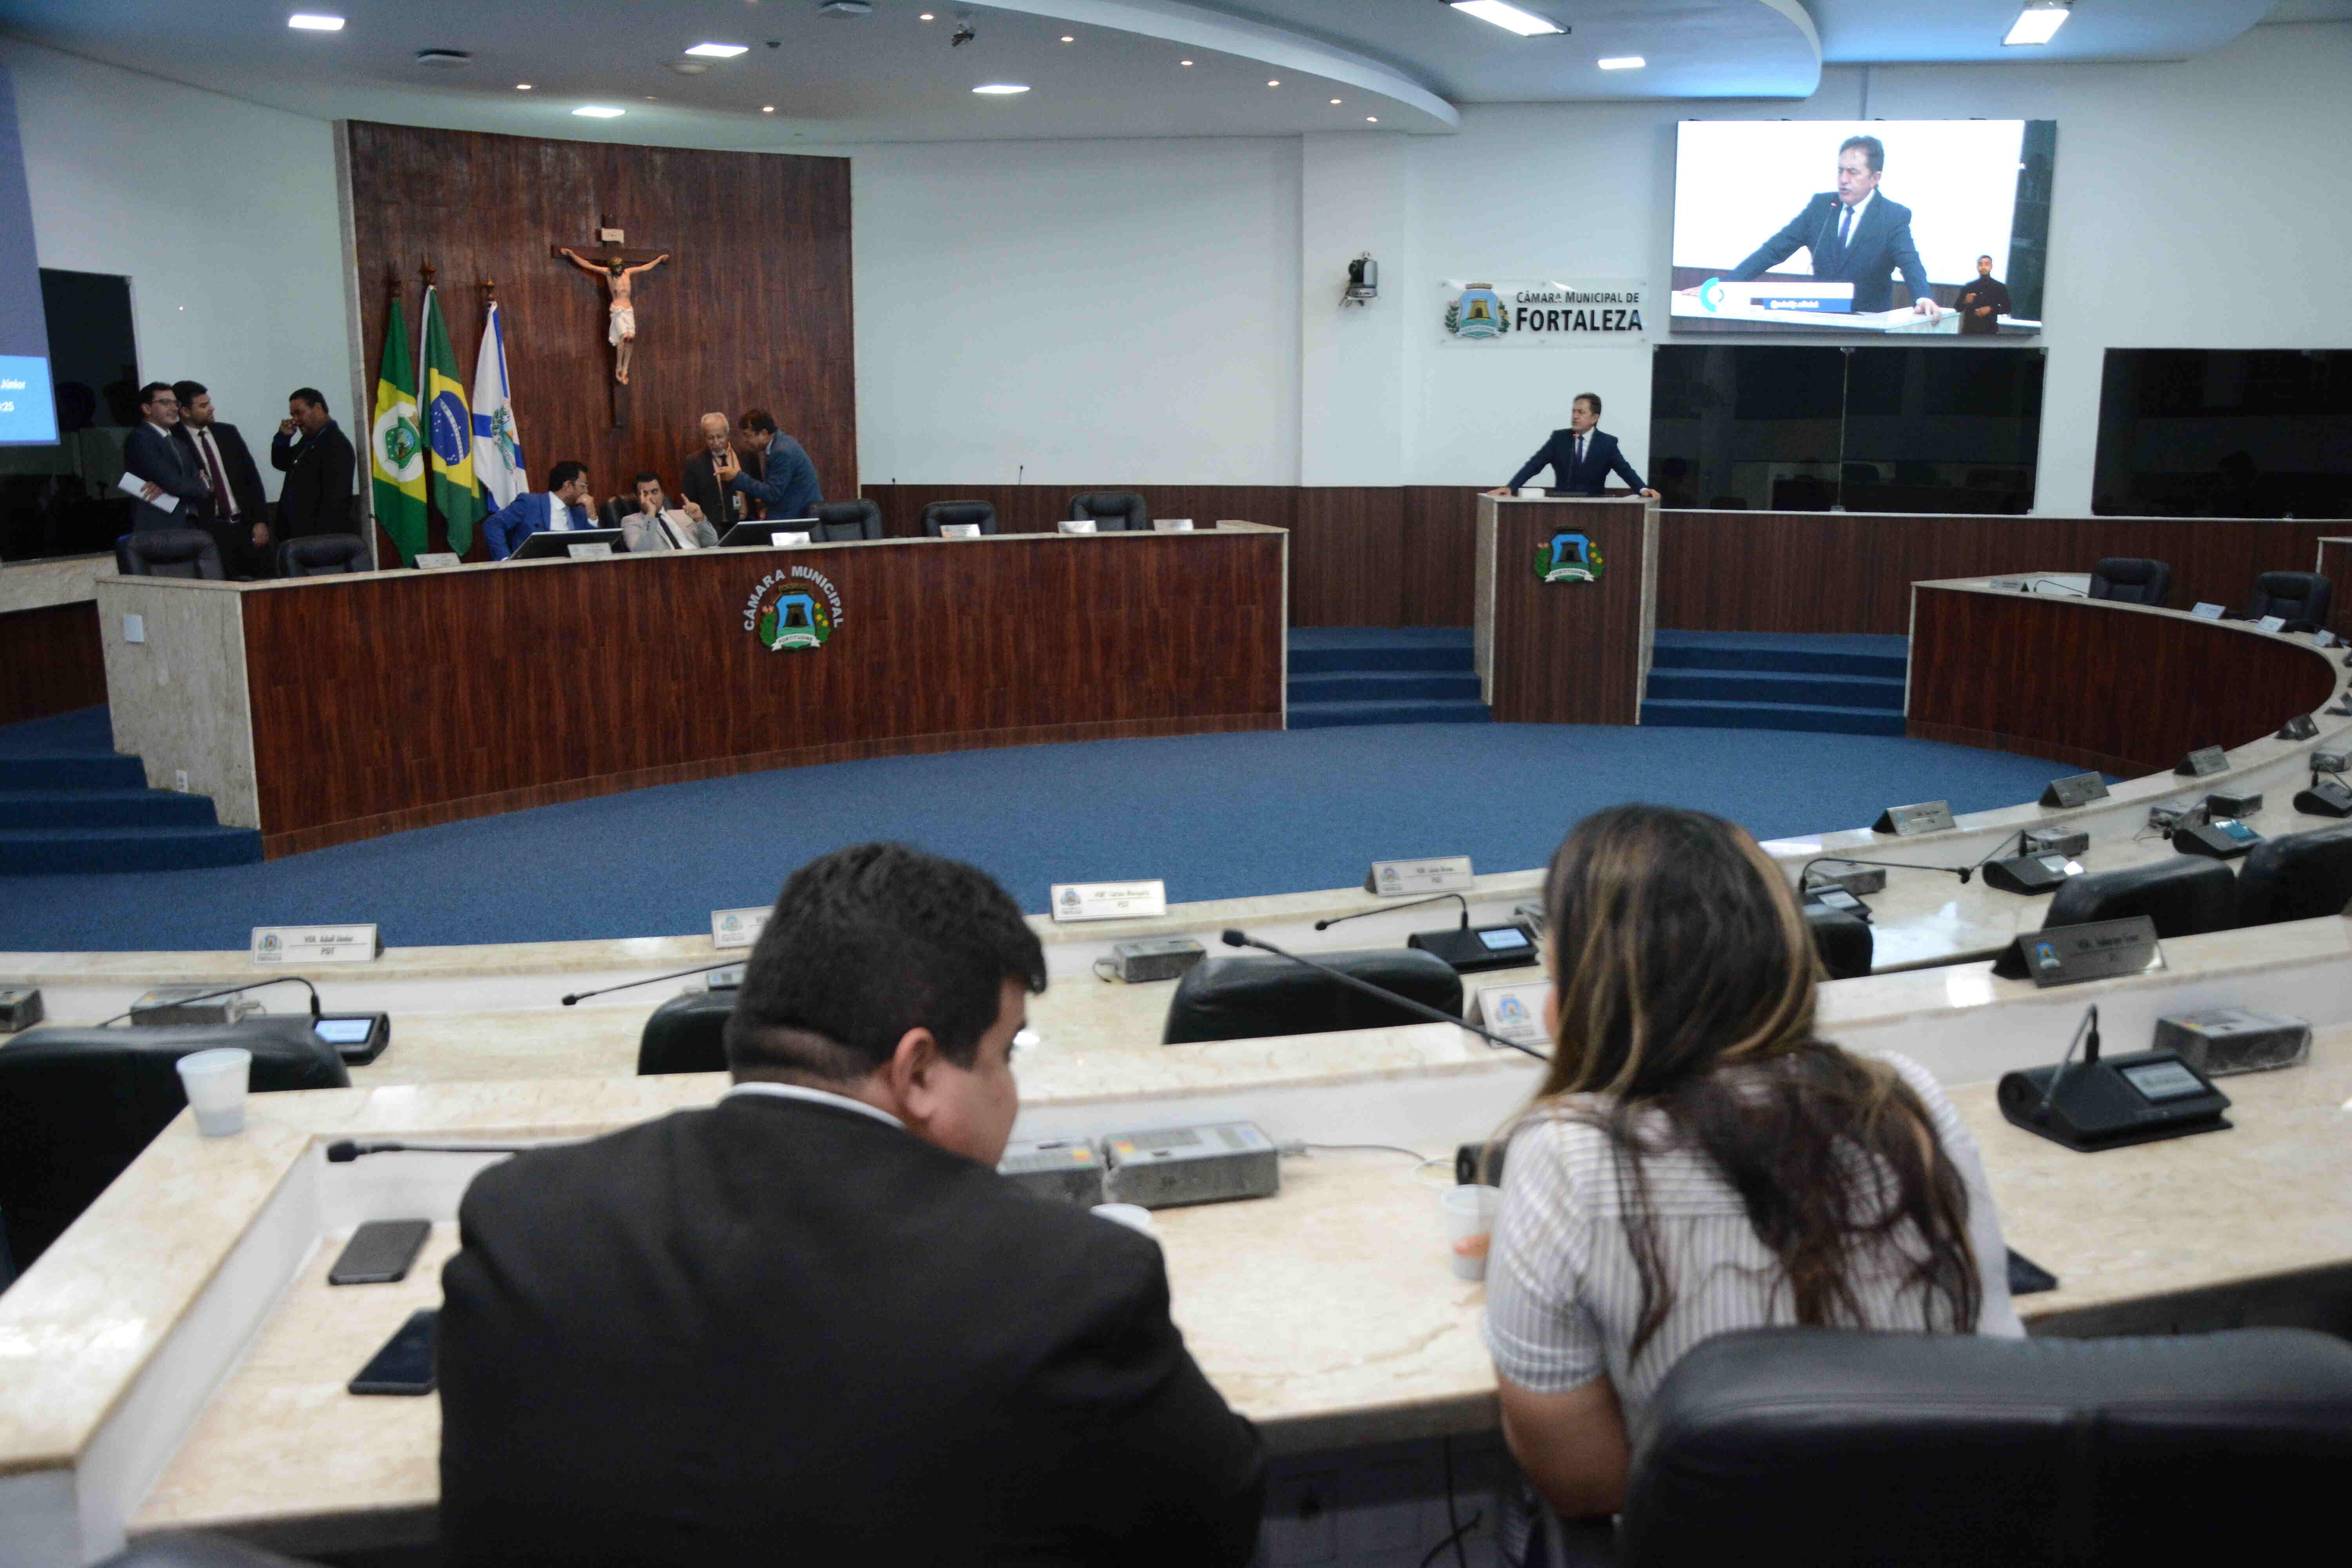 Plenário Fausto Arruda, da Câmara Municipal de Fortaleza